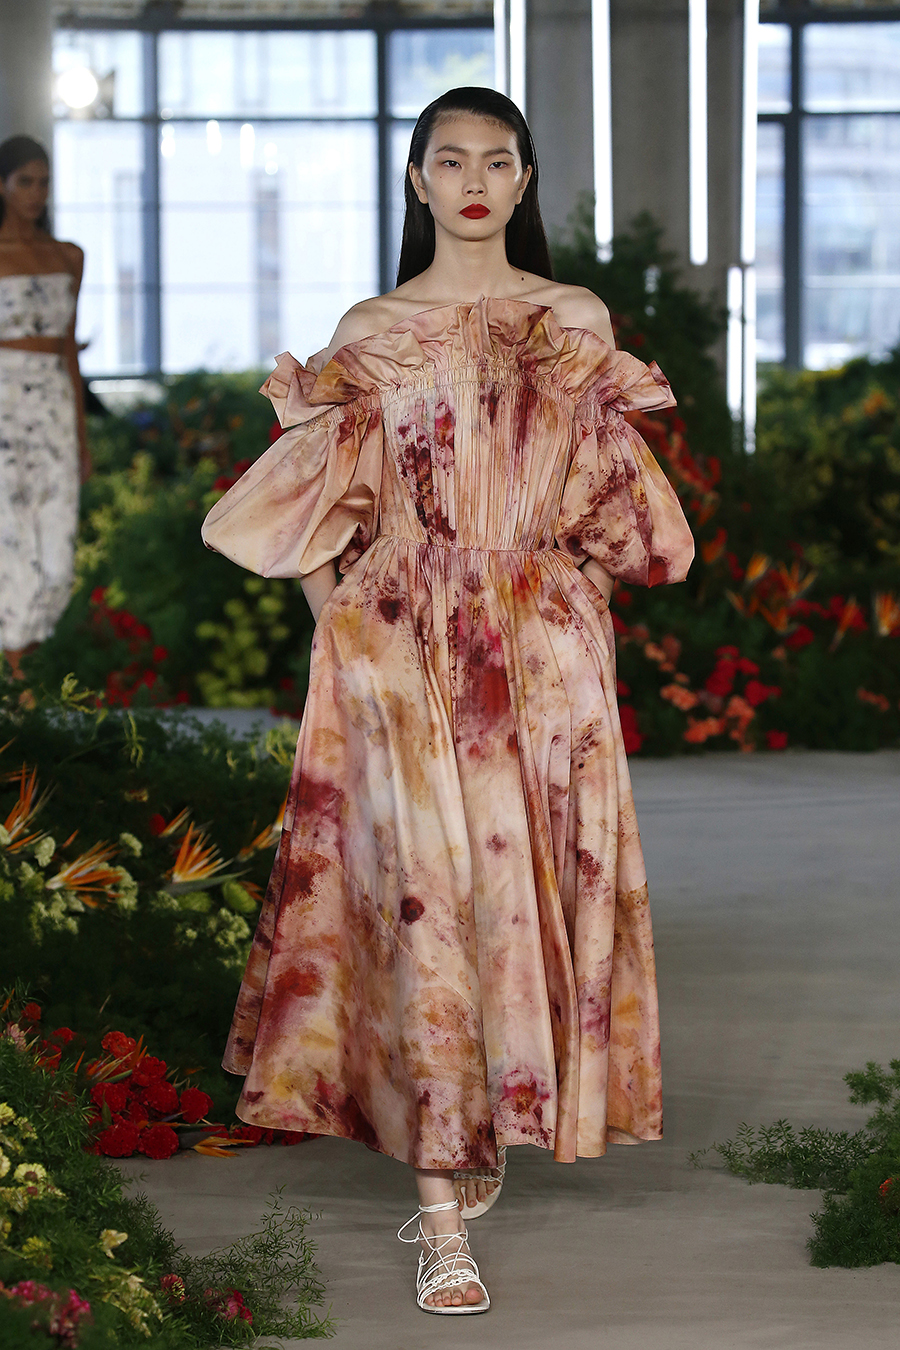 модное платье весна лето 2022 винтажное викторианское в стиле бриджертонов длинное бежевое цветы пышное